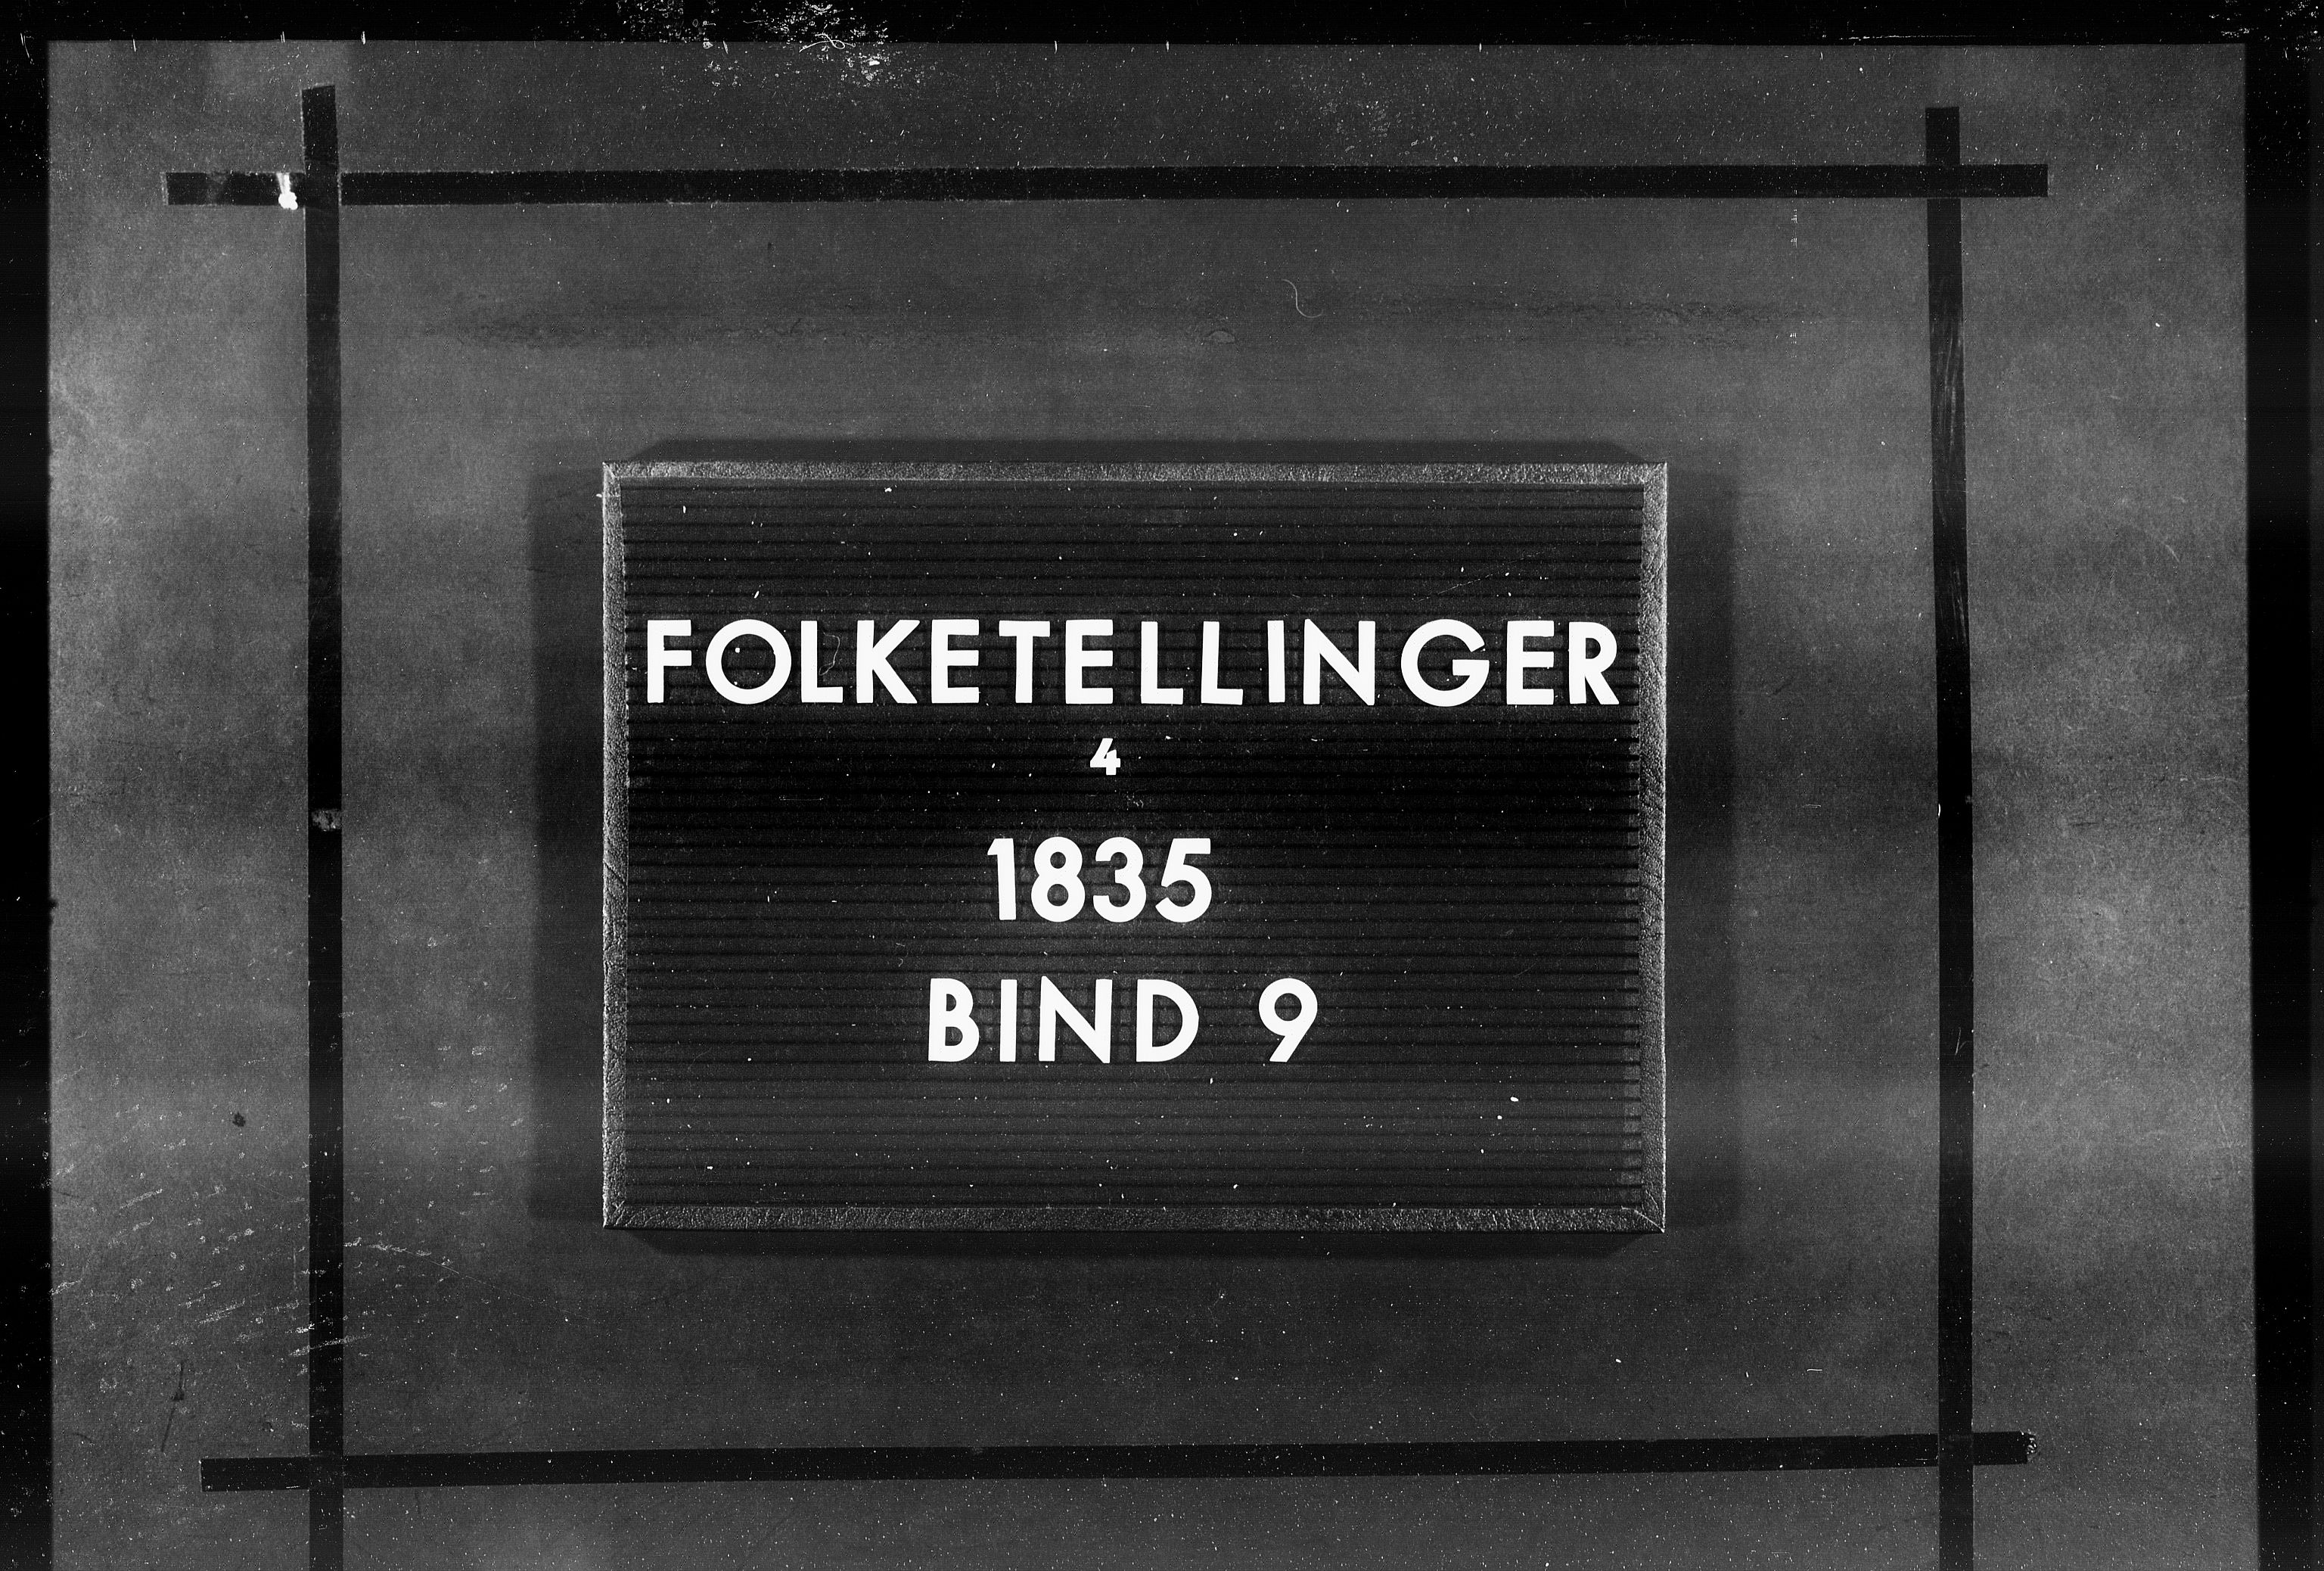 RA, Folketellingen 1835, bind 9: Nordre Trondhjem amt, Nordland amt og Finnmarken amt, 1835